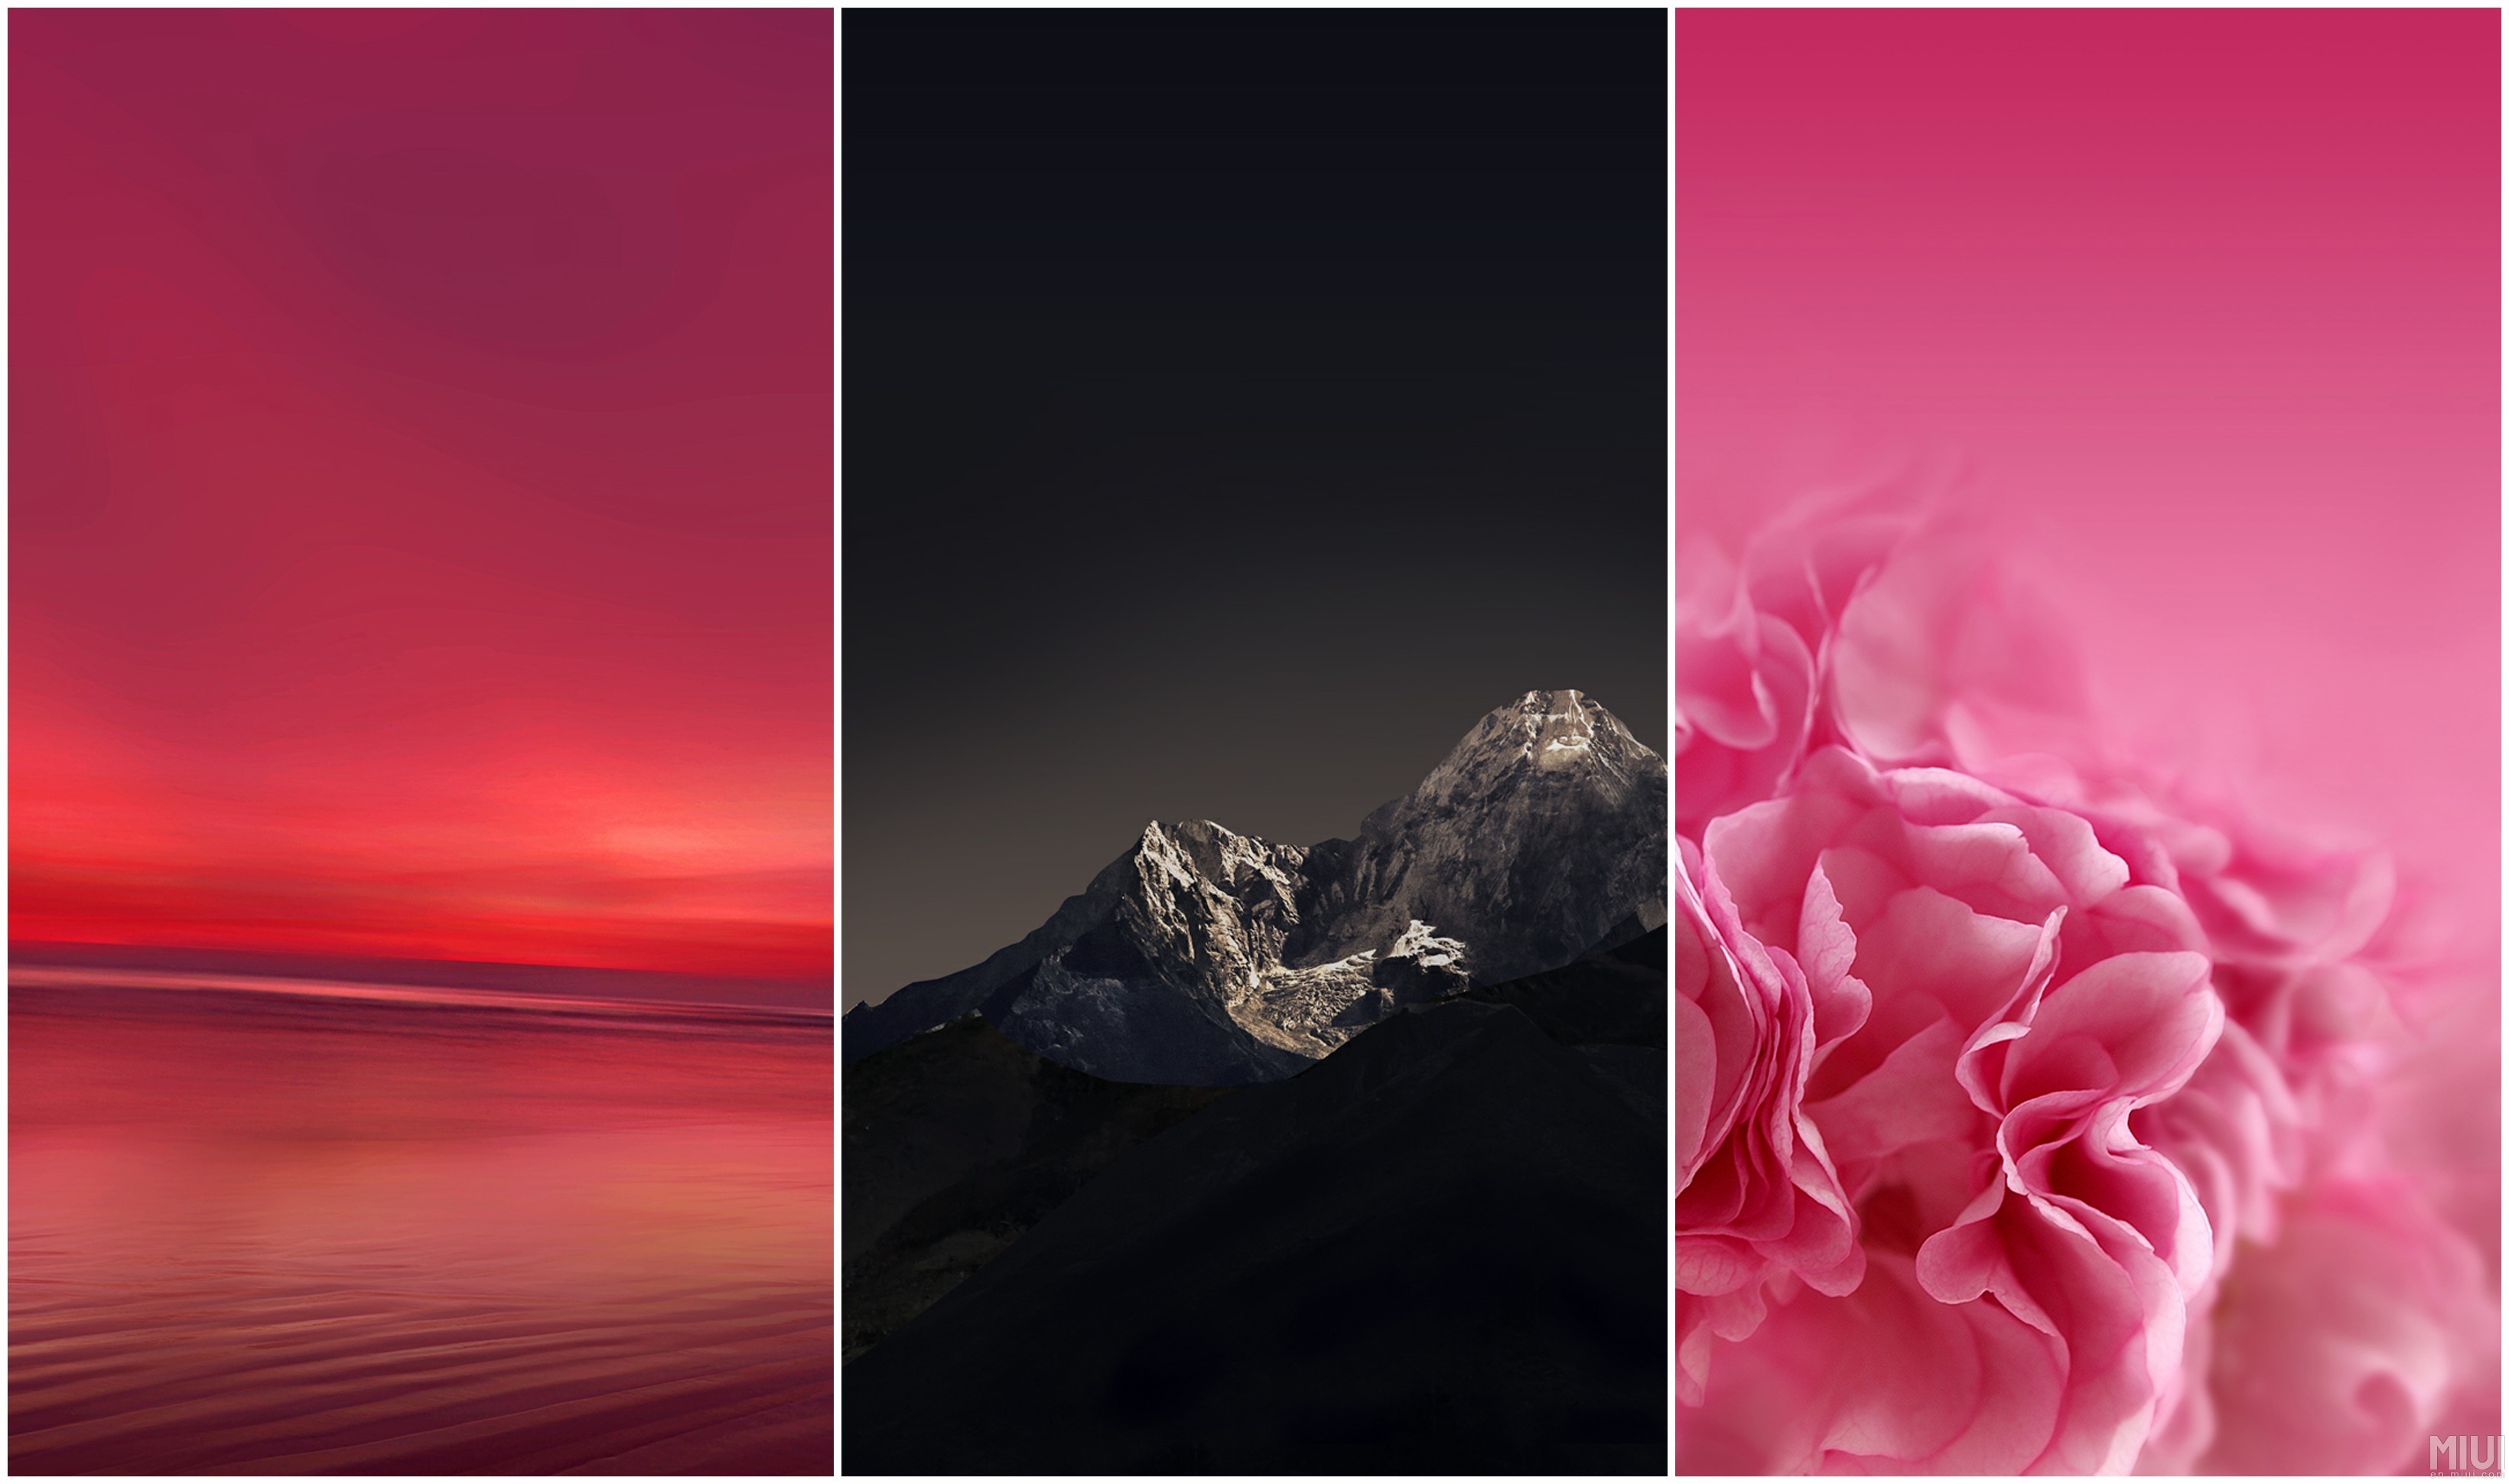 asus zenfone 2 láser fondo de pantalla,rosado,rojo,cielo,diseño gráfico,fotografía